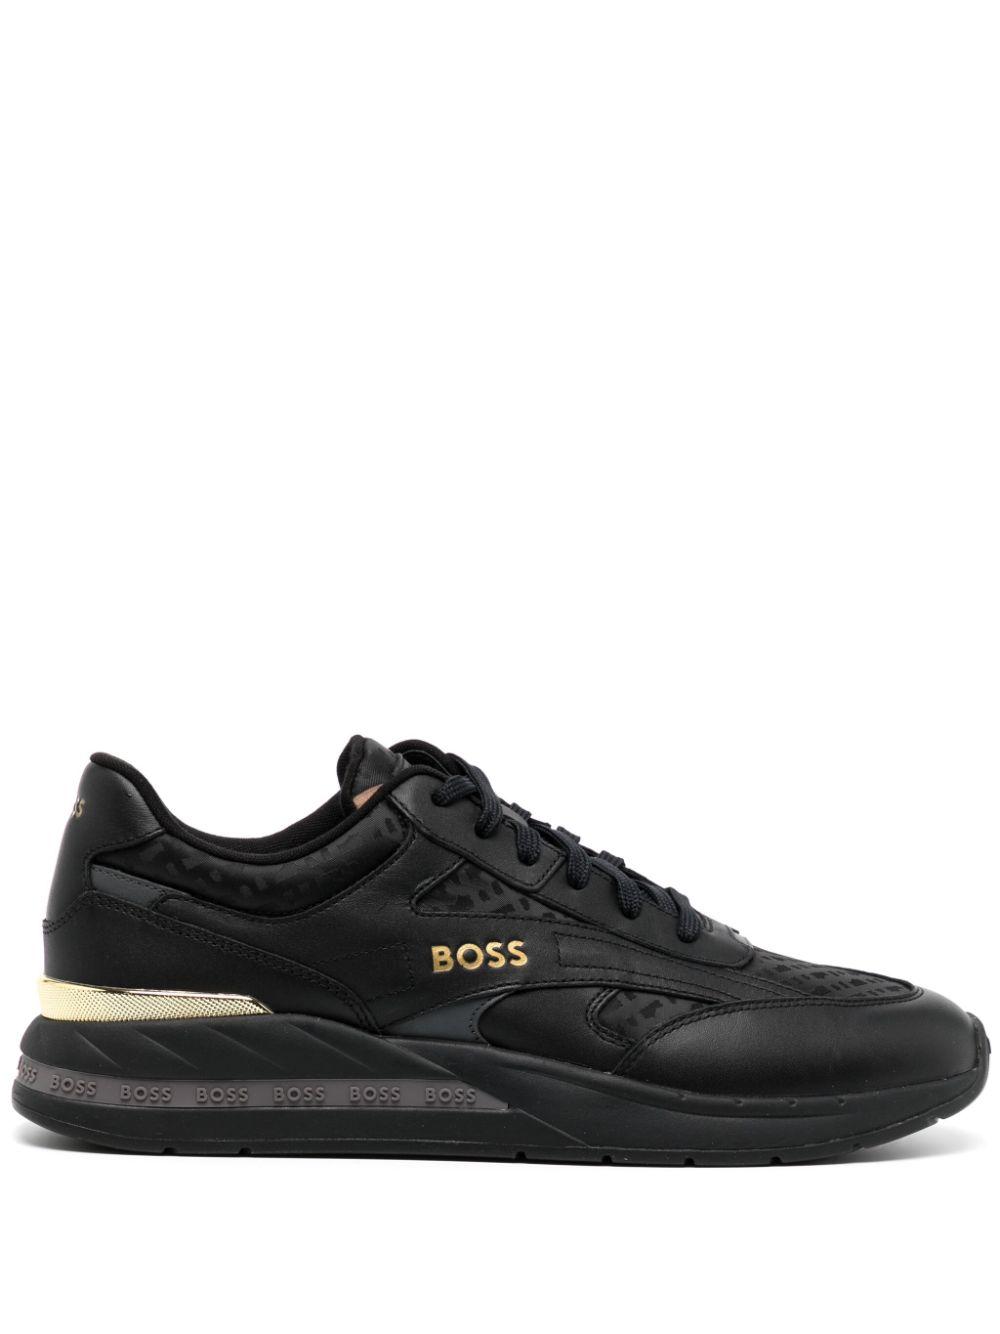 BOSS by HUGO BOSS Kurt Panelled Sneakers in Black for Men | Lyst